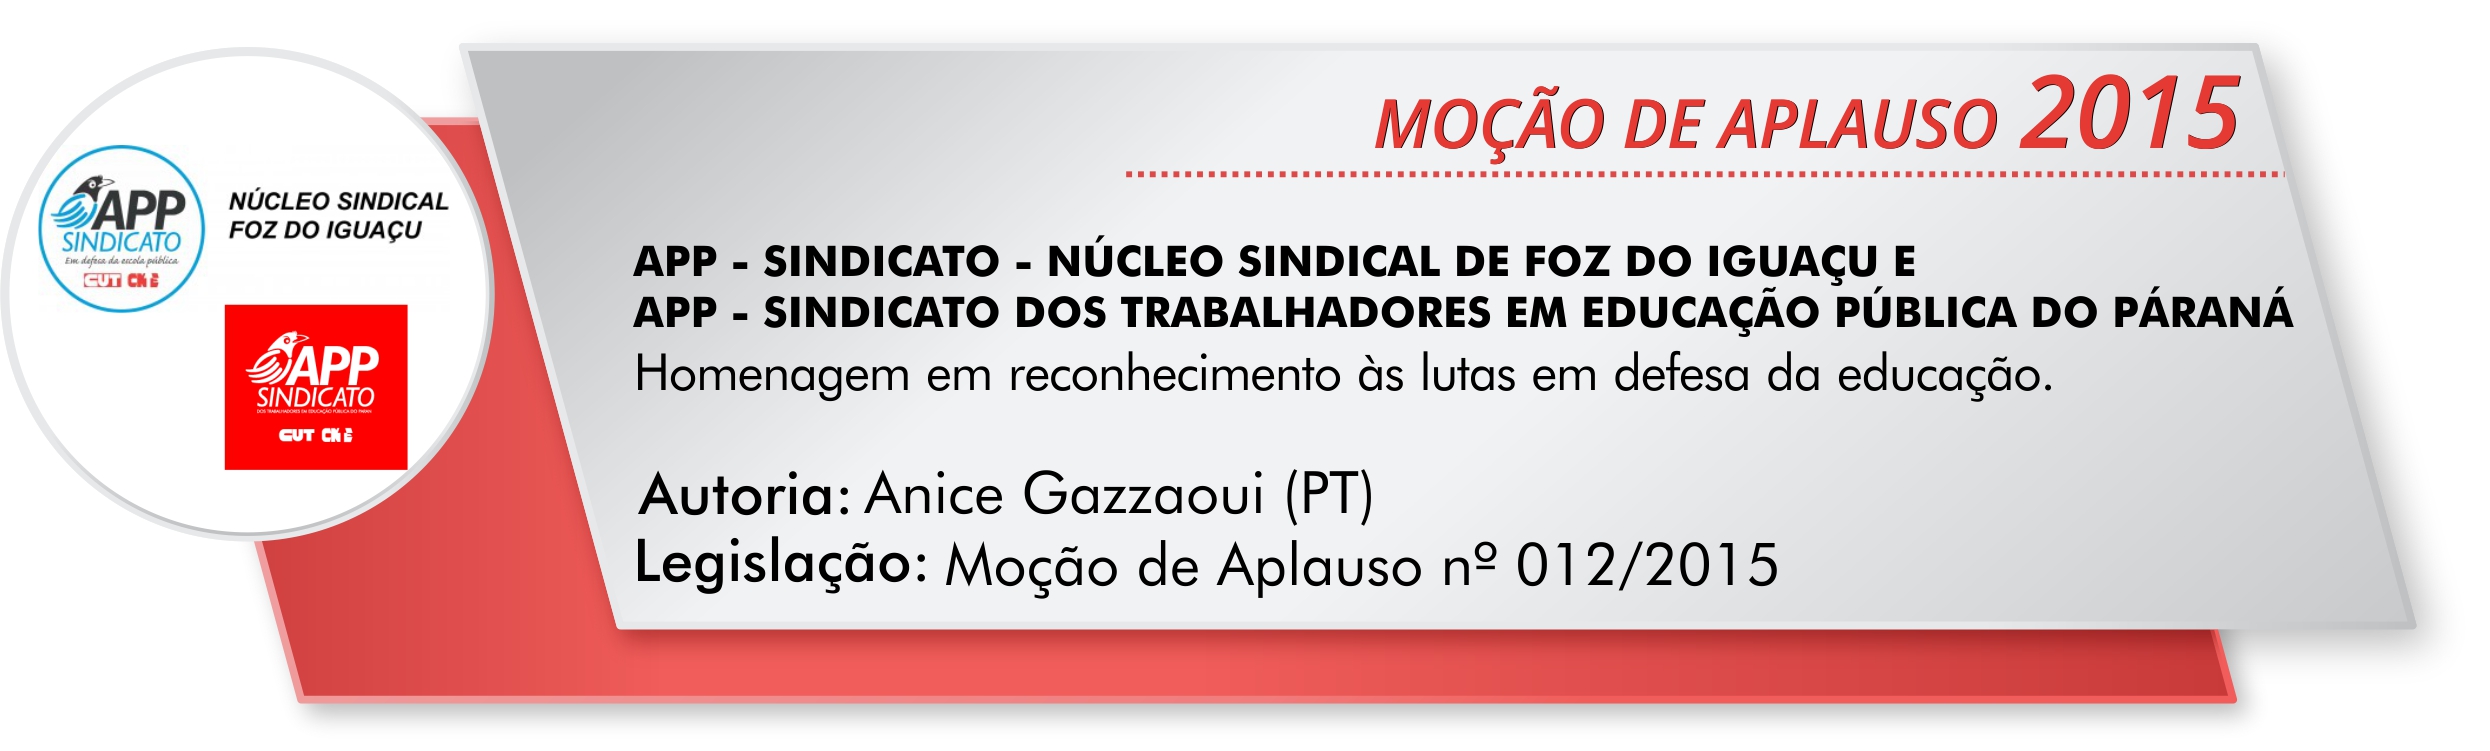 App - Sindicato – Núcleo Sindical de Foz do Iguaçu e APP - Sindicato dos Trabalhadores em Educação Pública do Paraná.